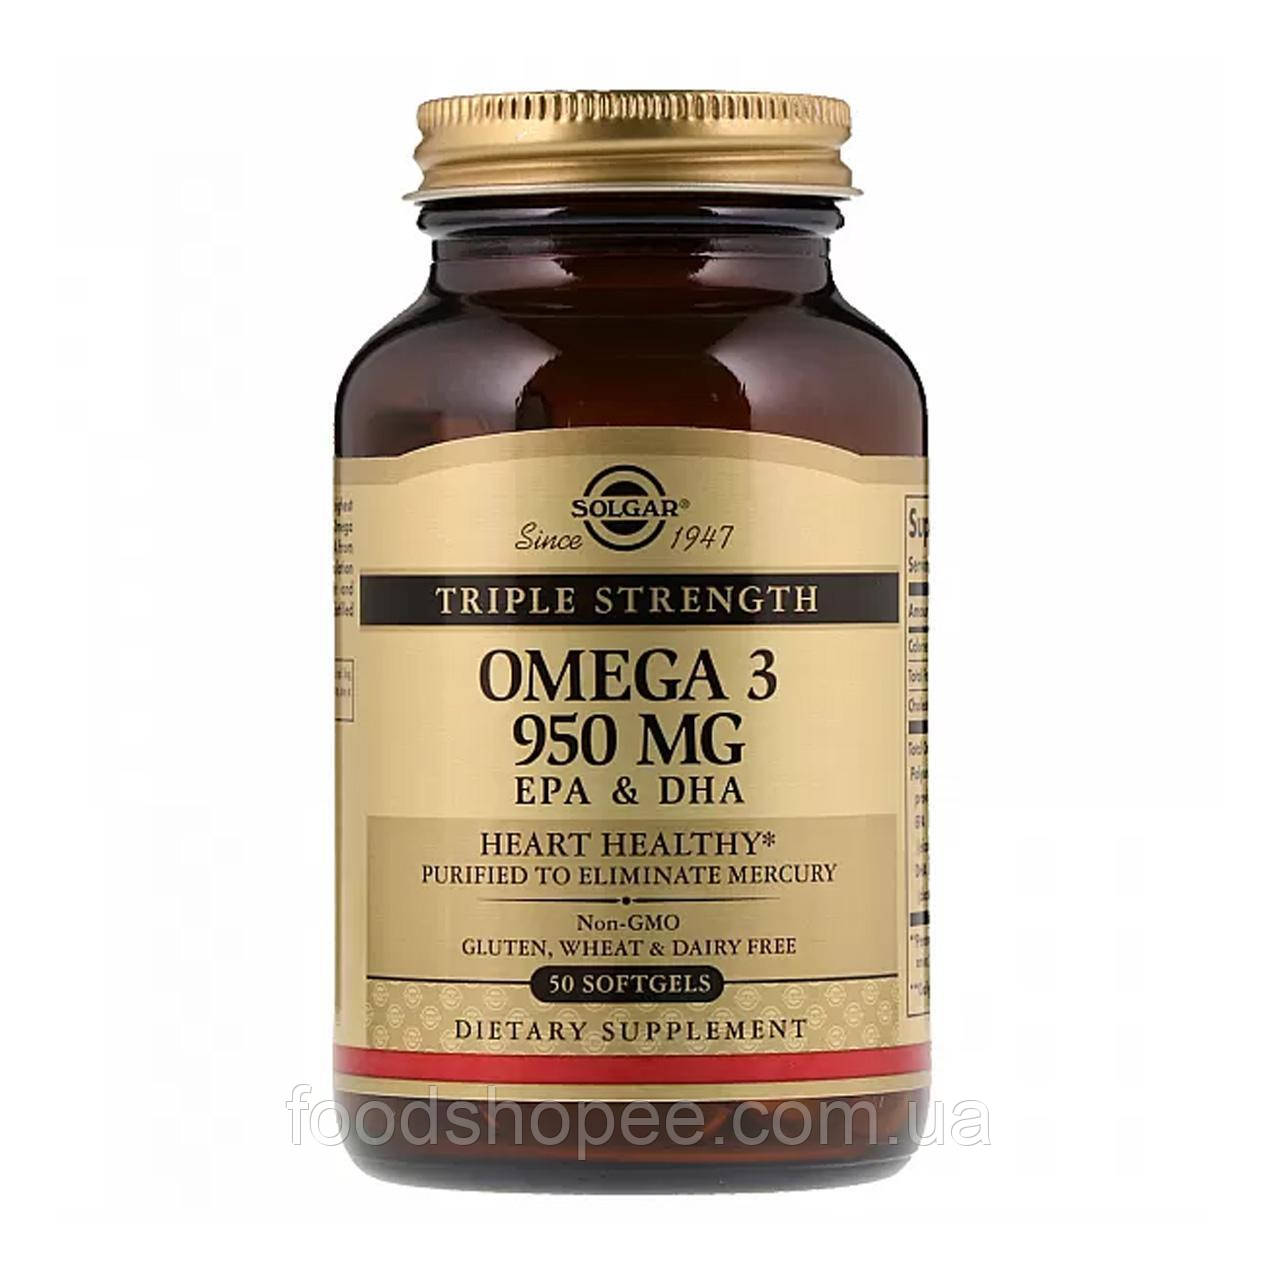 Омега-3 потрійної сили (Omega 3 Triple Strength) 950 мг 50 капсул SOL-02057